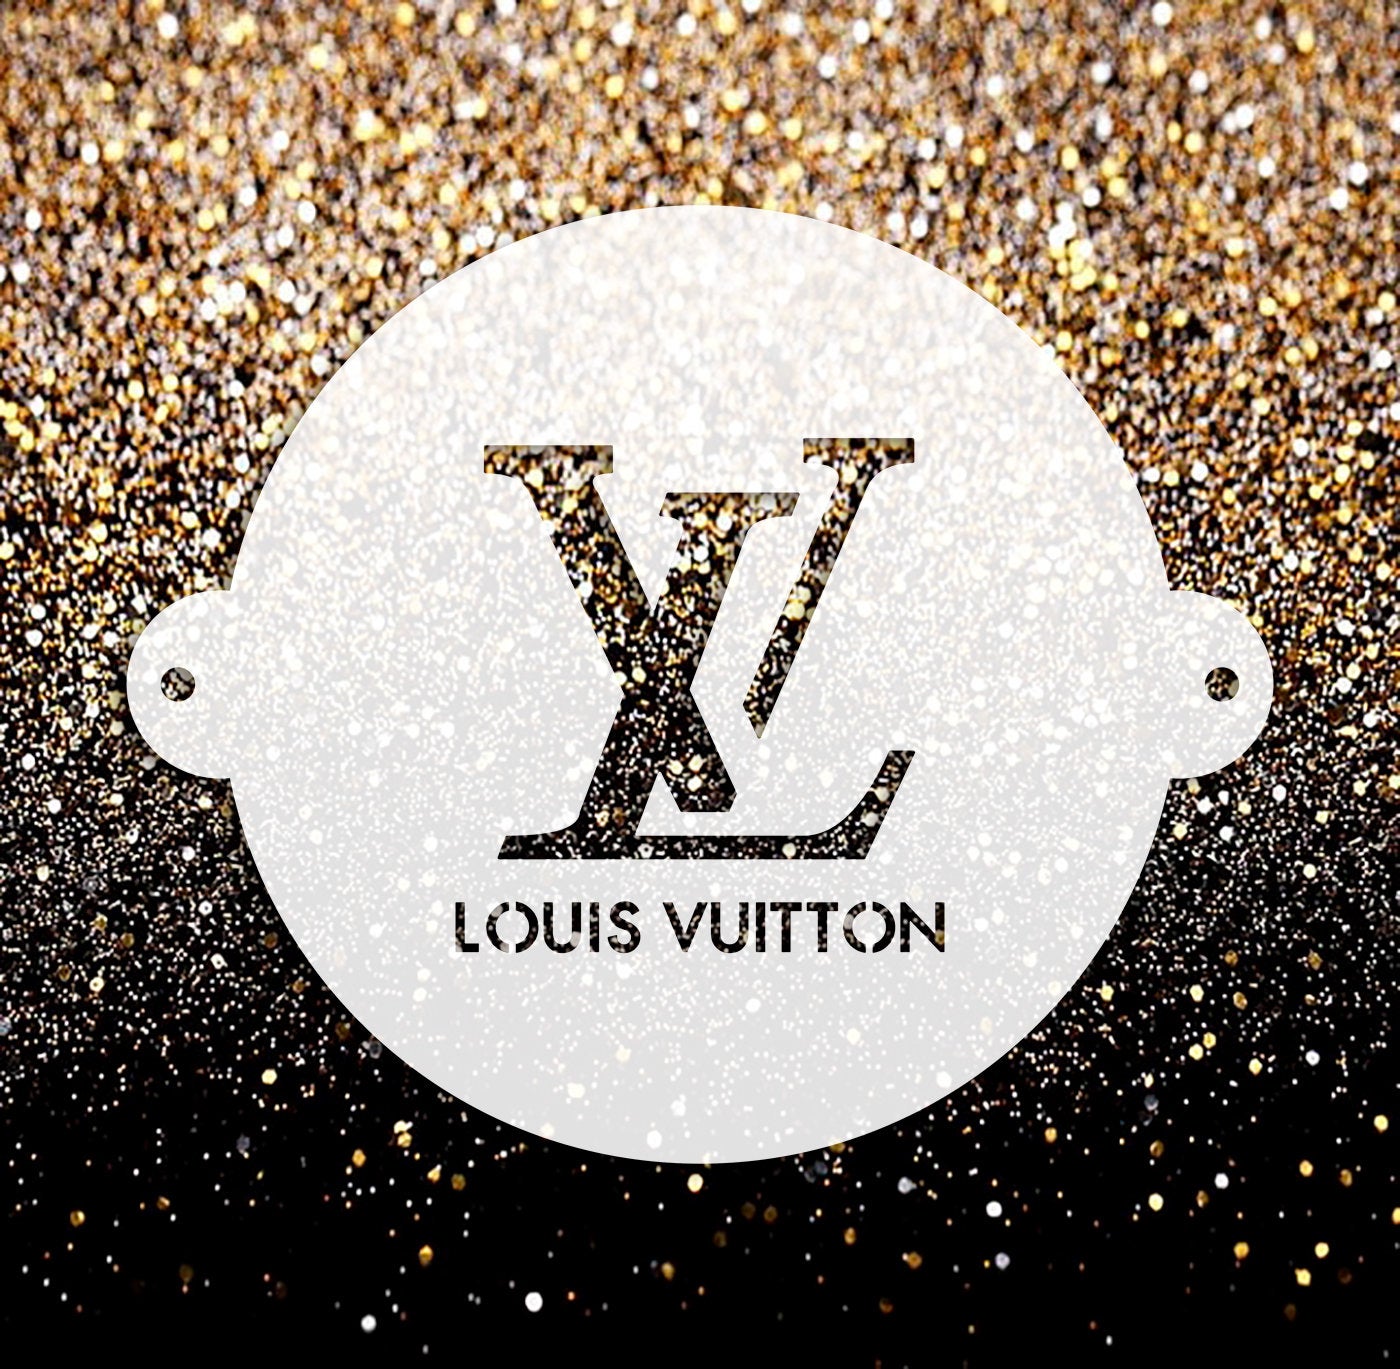 Big Louis Vuitton Stencil For Wall